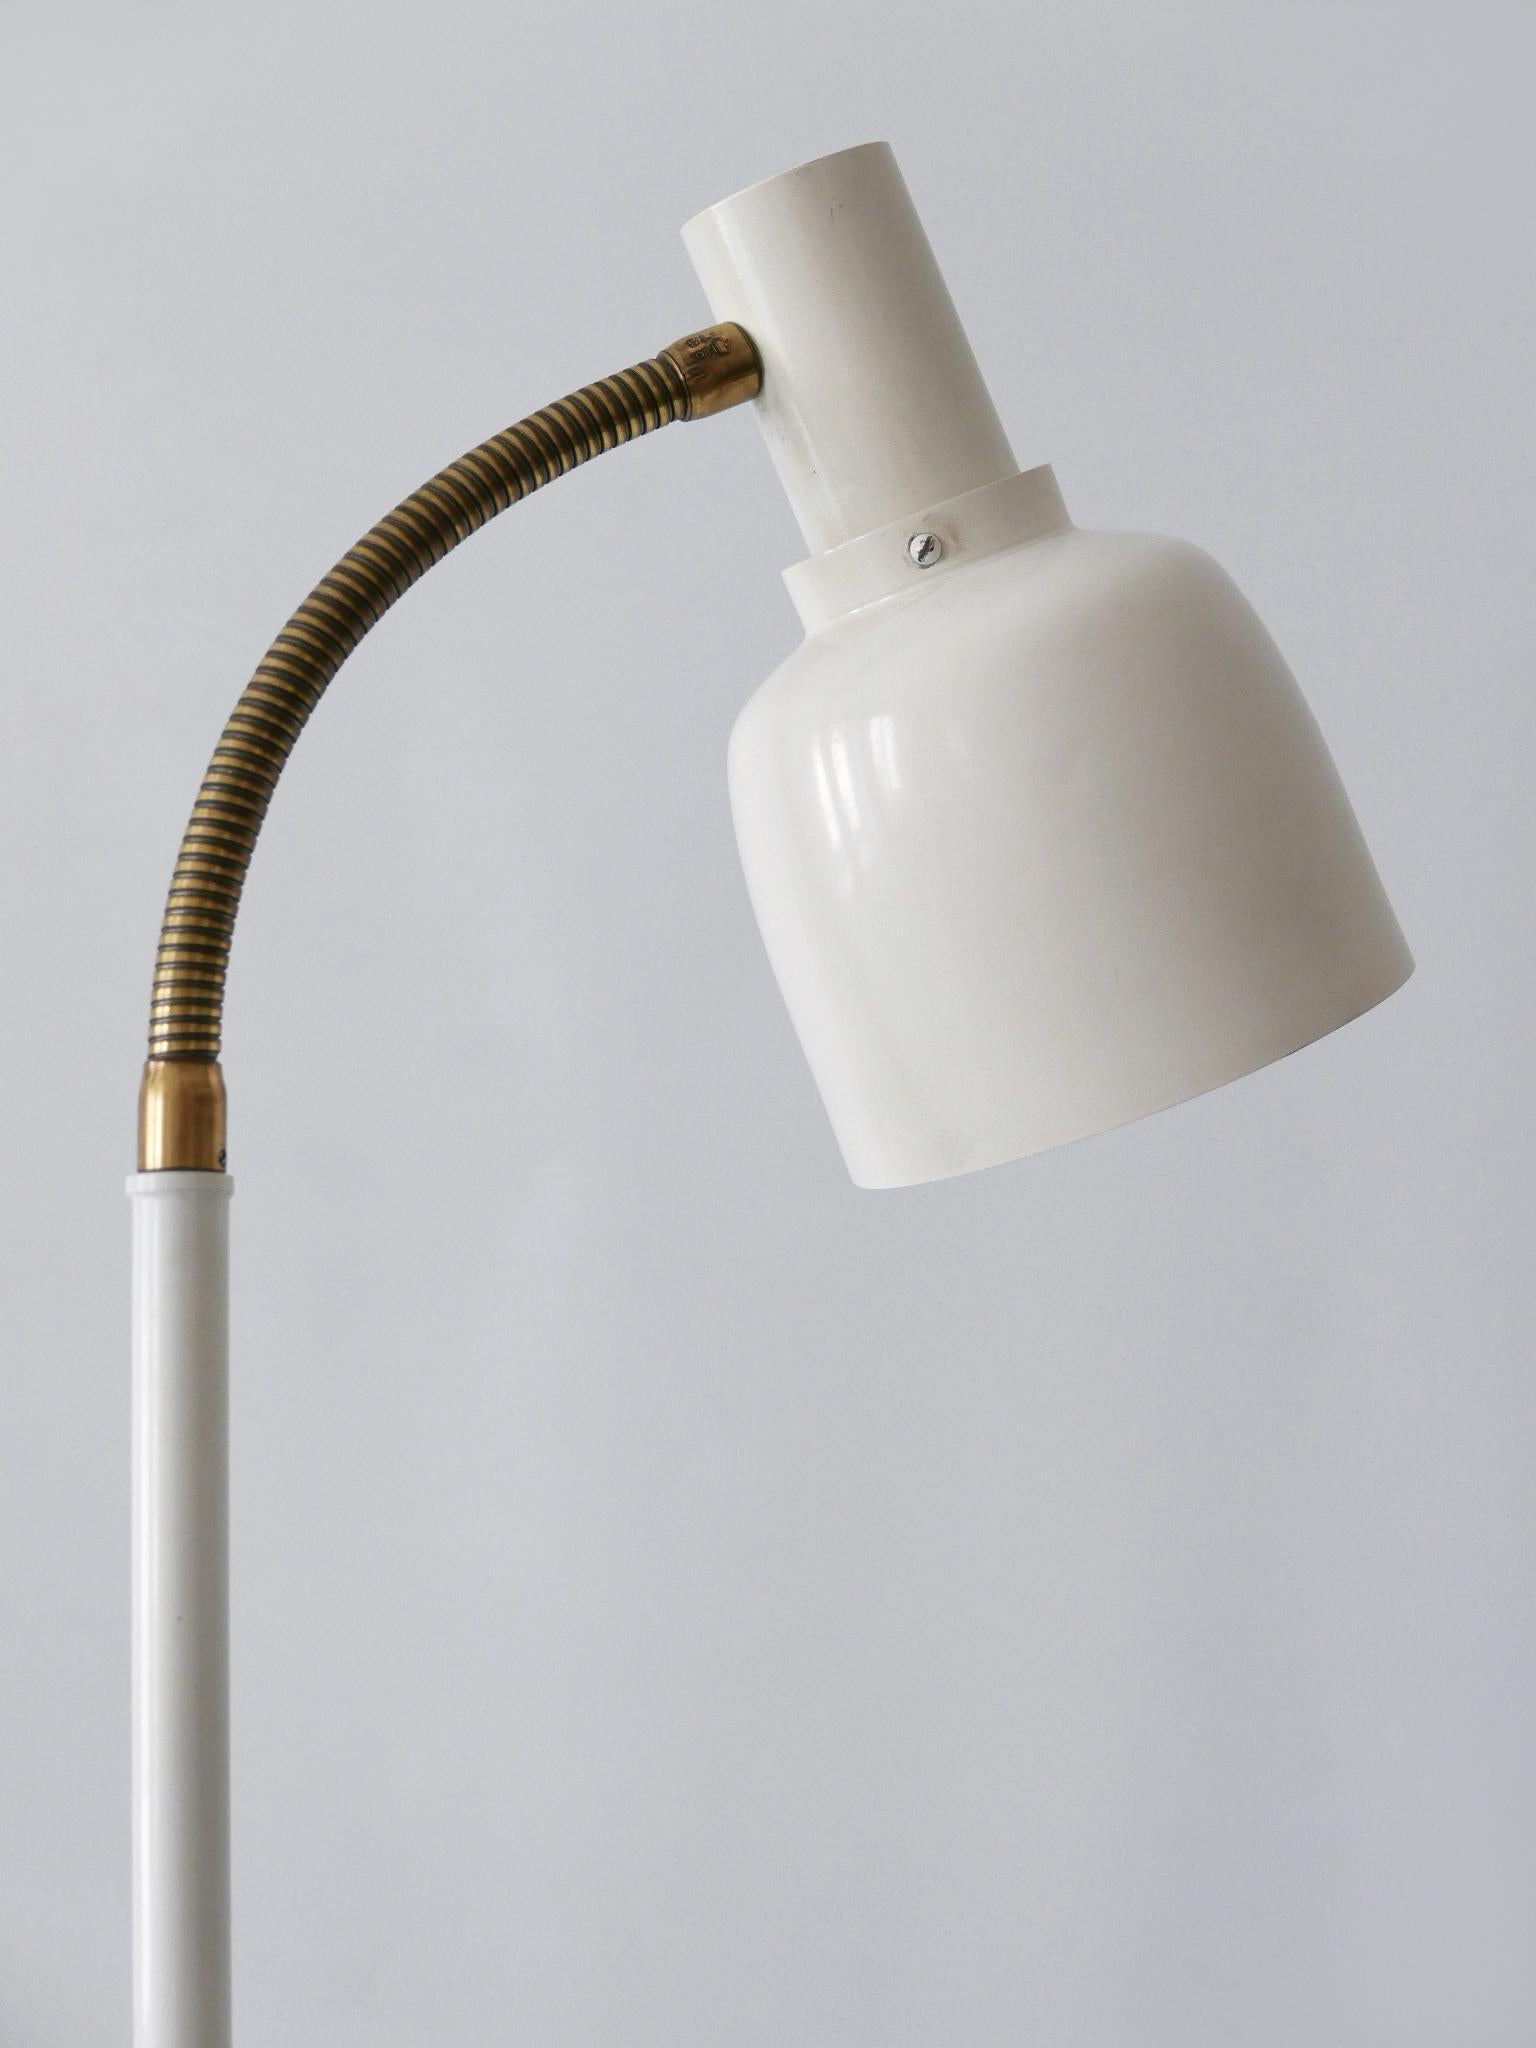 Danish Rare Mid-Century Modern Floor Lamp or Reading Light by Hans-Agne Jakobsson 1960s For Sale